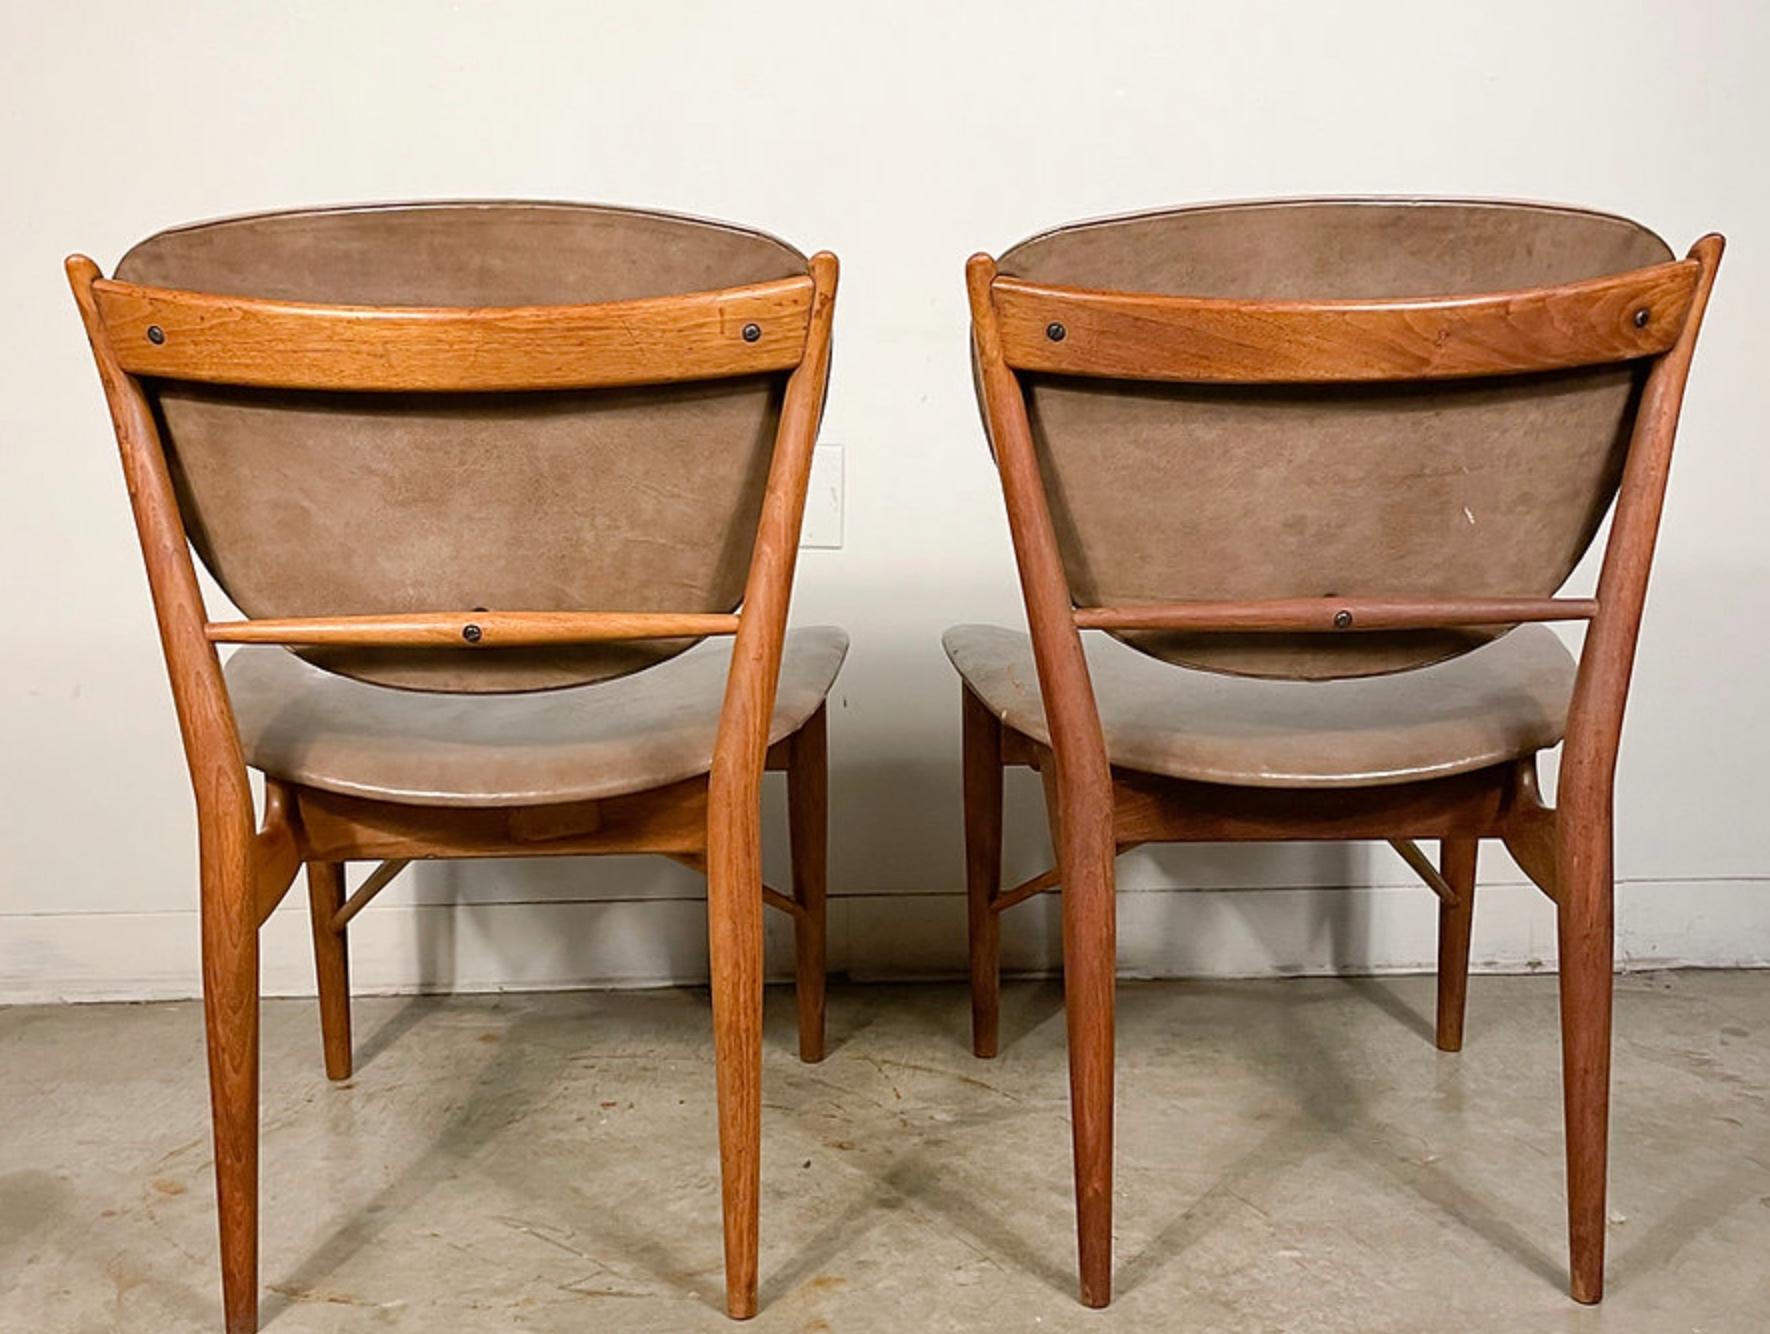 20th Century Finn Juhl 51 Chairs by Baker in Walnut